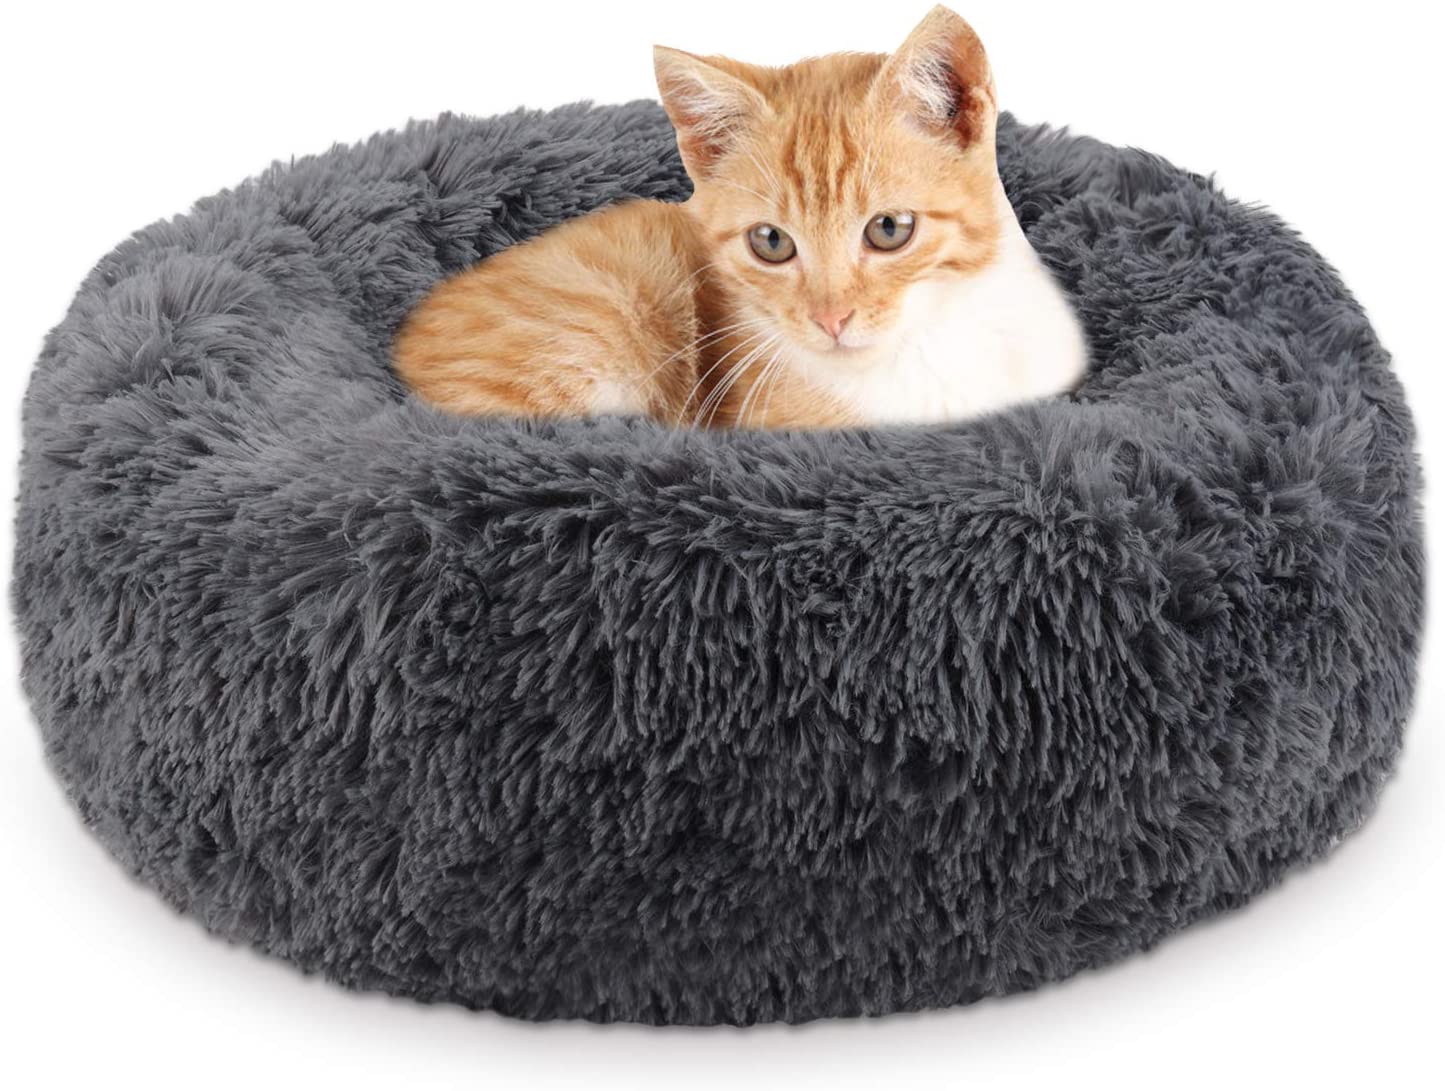  Legendog Cama para Gatos, Cama para Mascotas Suave y cálida/Cama para Dormir para Gatos/Camas para Mascotas para Gatos Gatitos para Dormir (Dark Grey) 